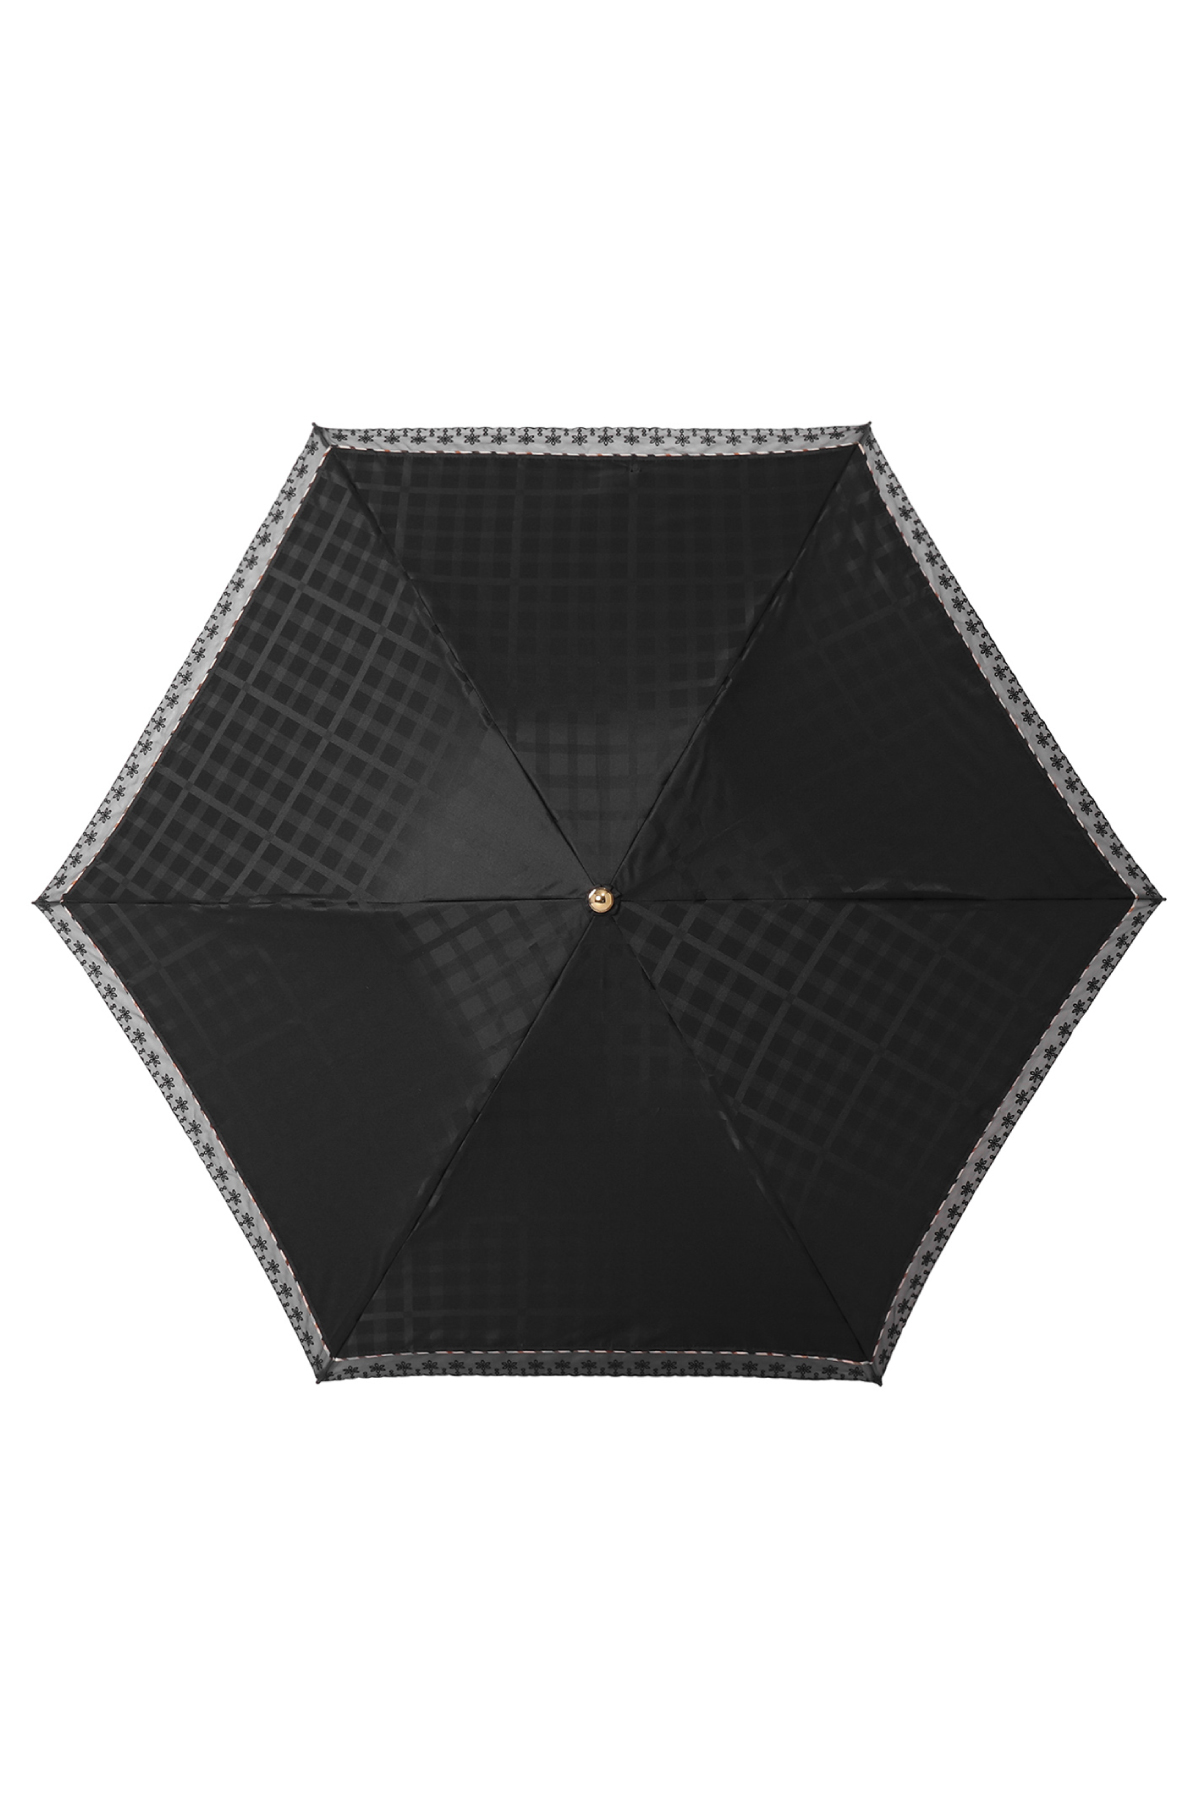 【日傘】ミニ折りたたみ傘ハウスチェックジャカード 詳細画像 1